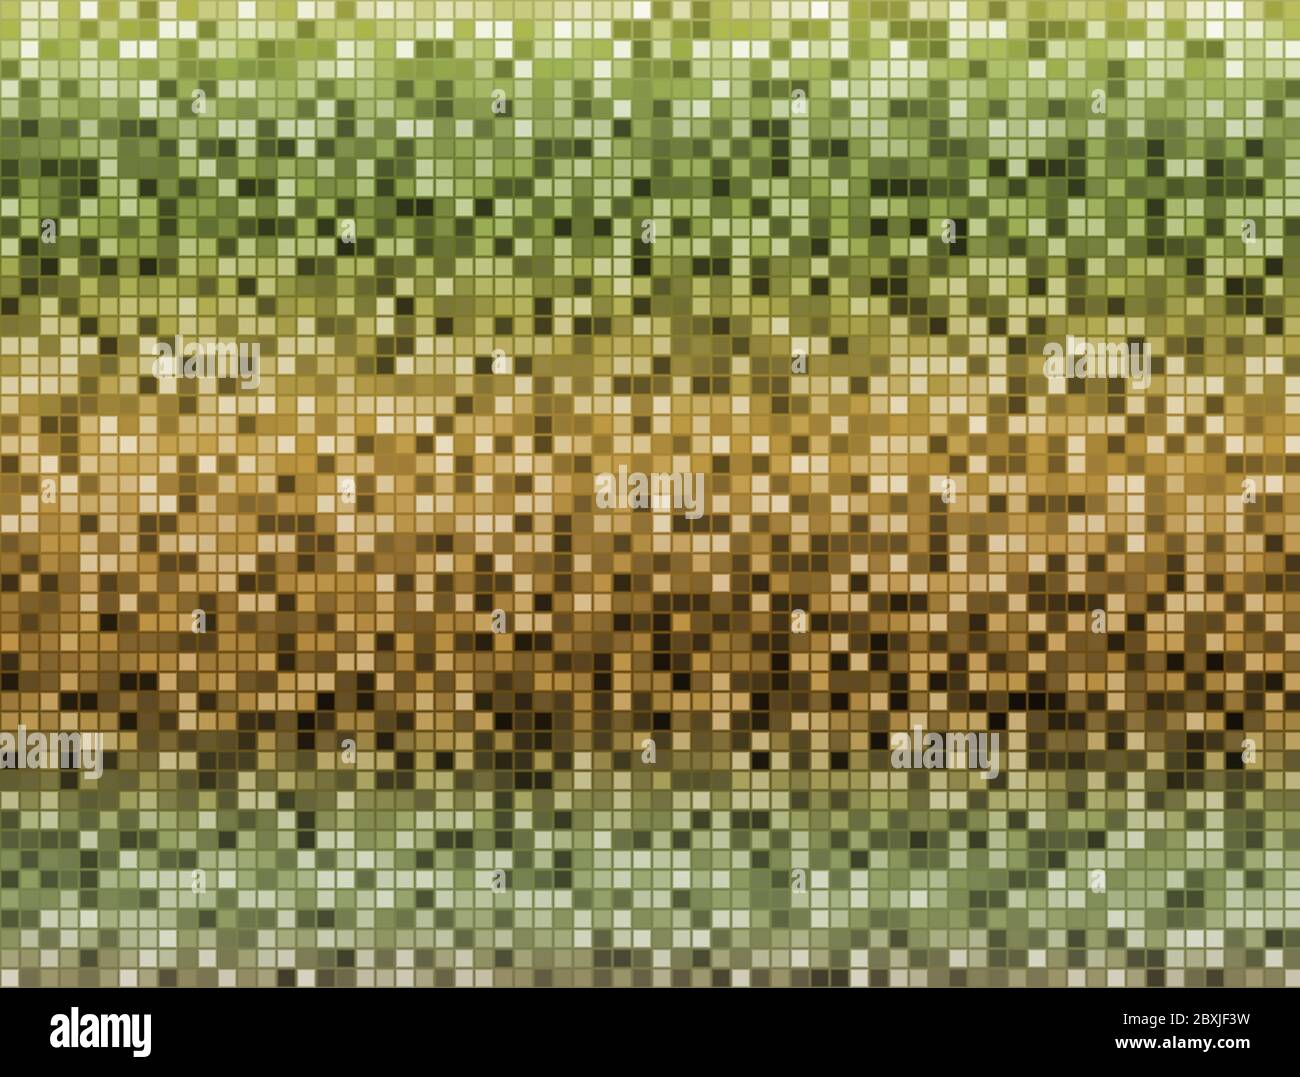 Motif abstrait multicolore de petits carrés de pixels. Dégradé vert et marron Banque D'Images